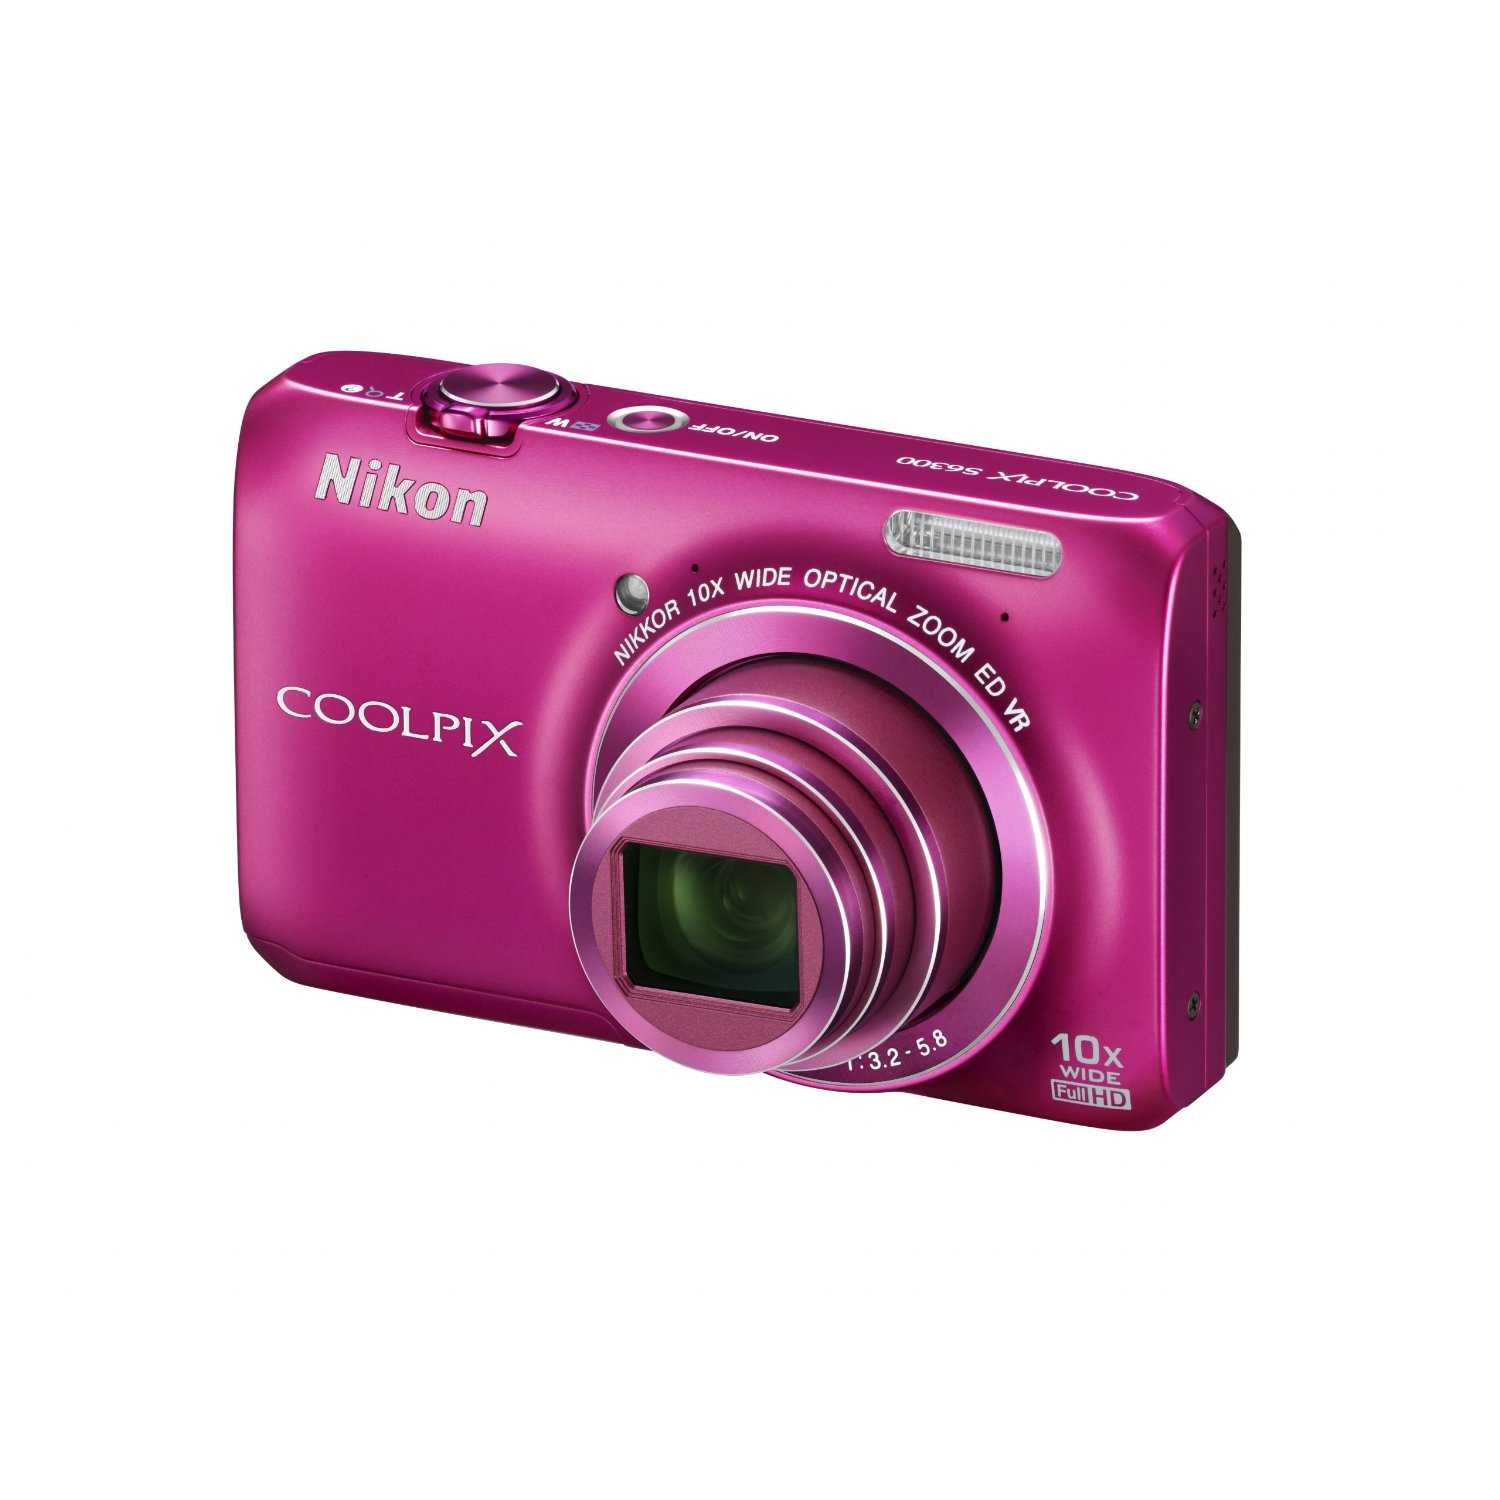 Фотоаппарат nikon coolpix s9300 — купить, цена и характеристики, отзывы